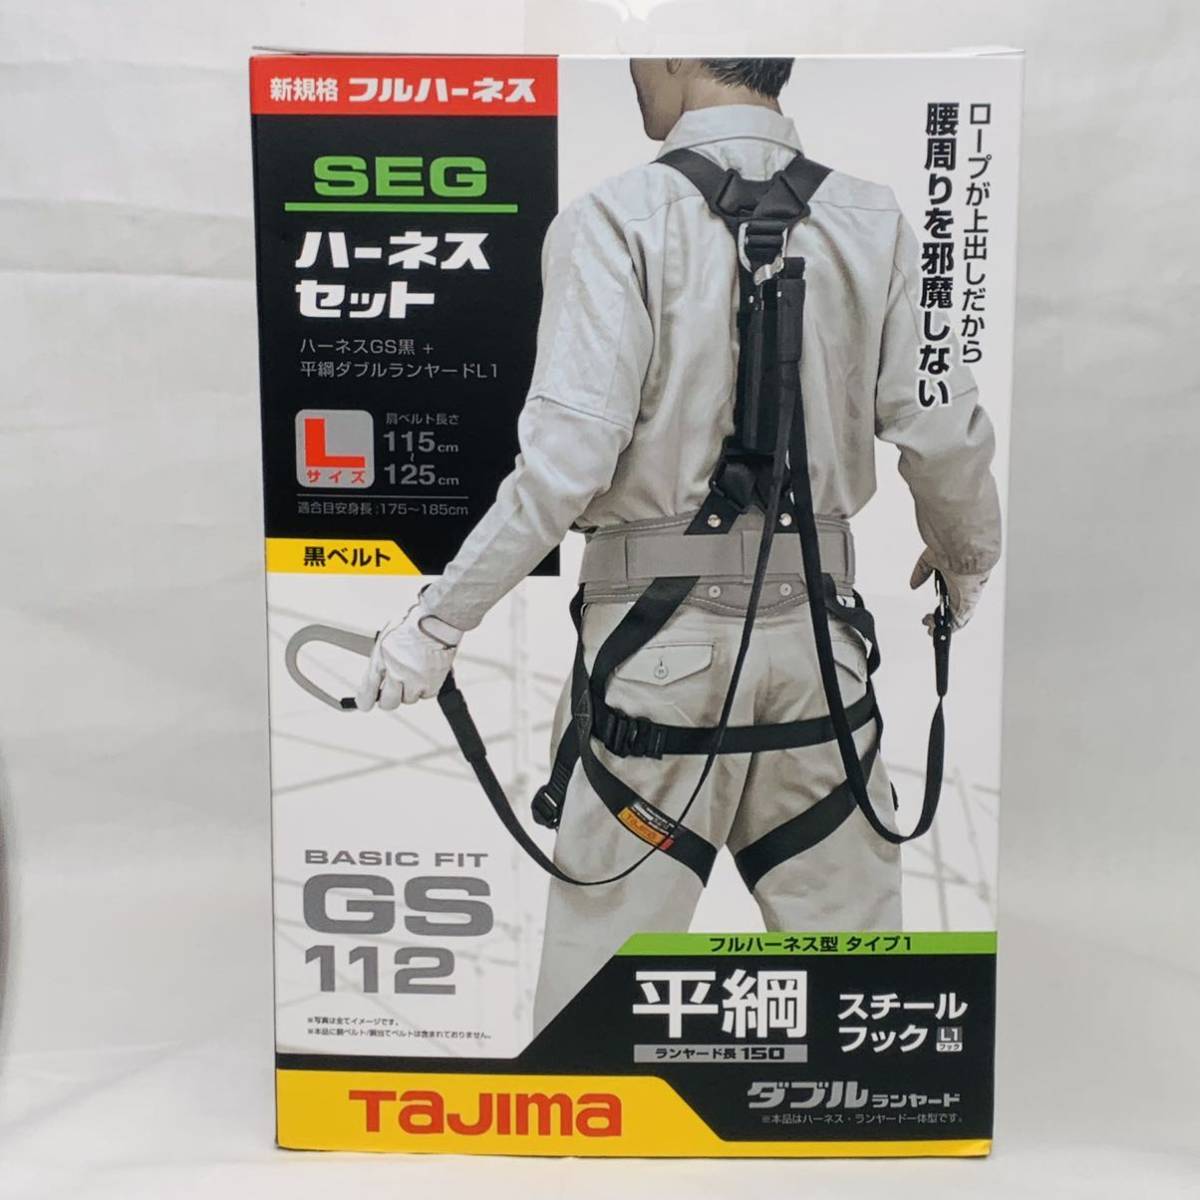 タジマ Tajima フルハーネス安全帯セット スチール製GSモデル&平ロープ